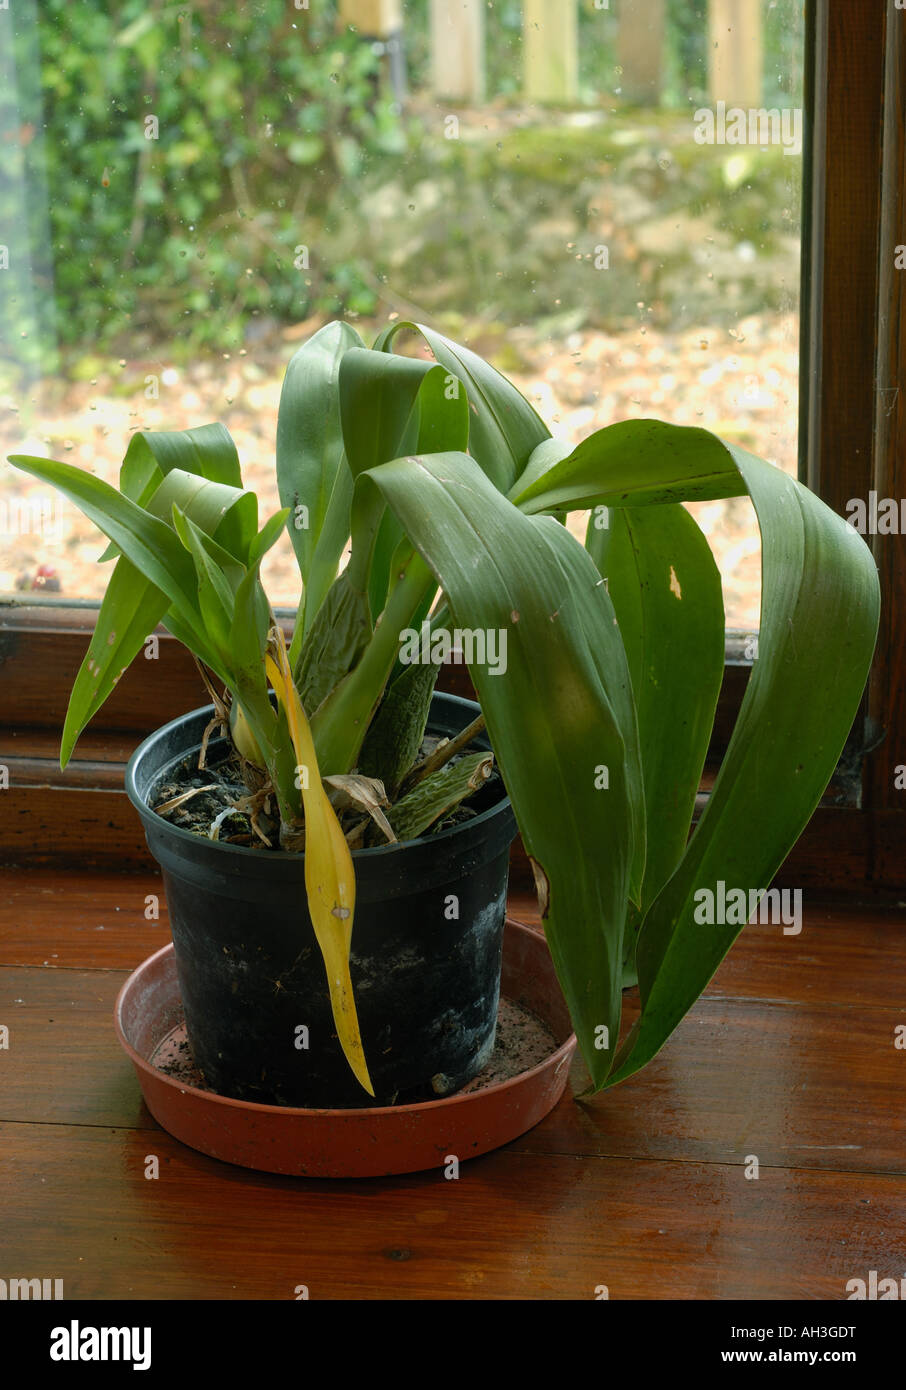 Haus Pflanze Orchidee in einem schlechten Zustand trocken, staubig und schwach Stockfoto